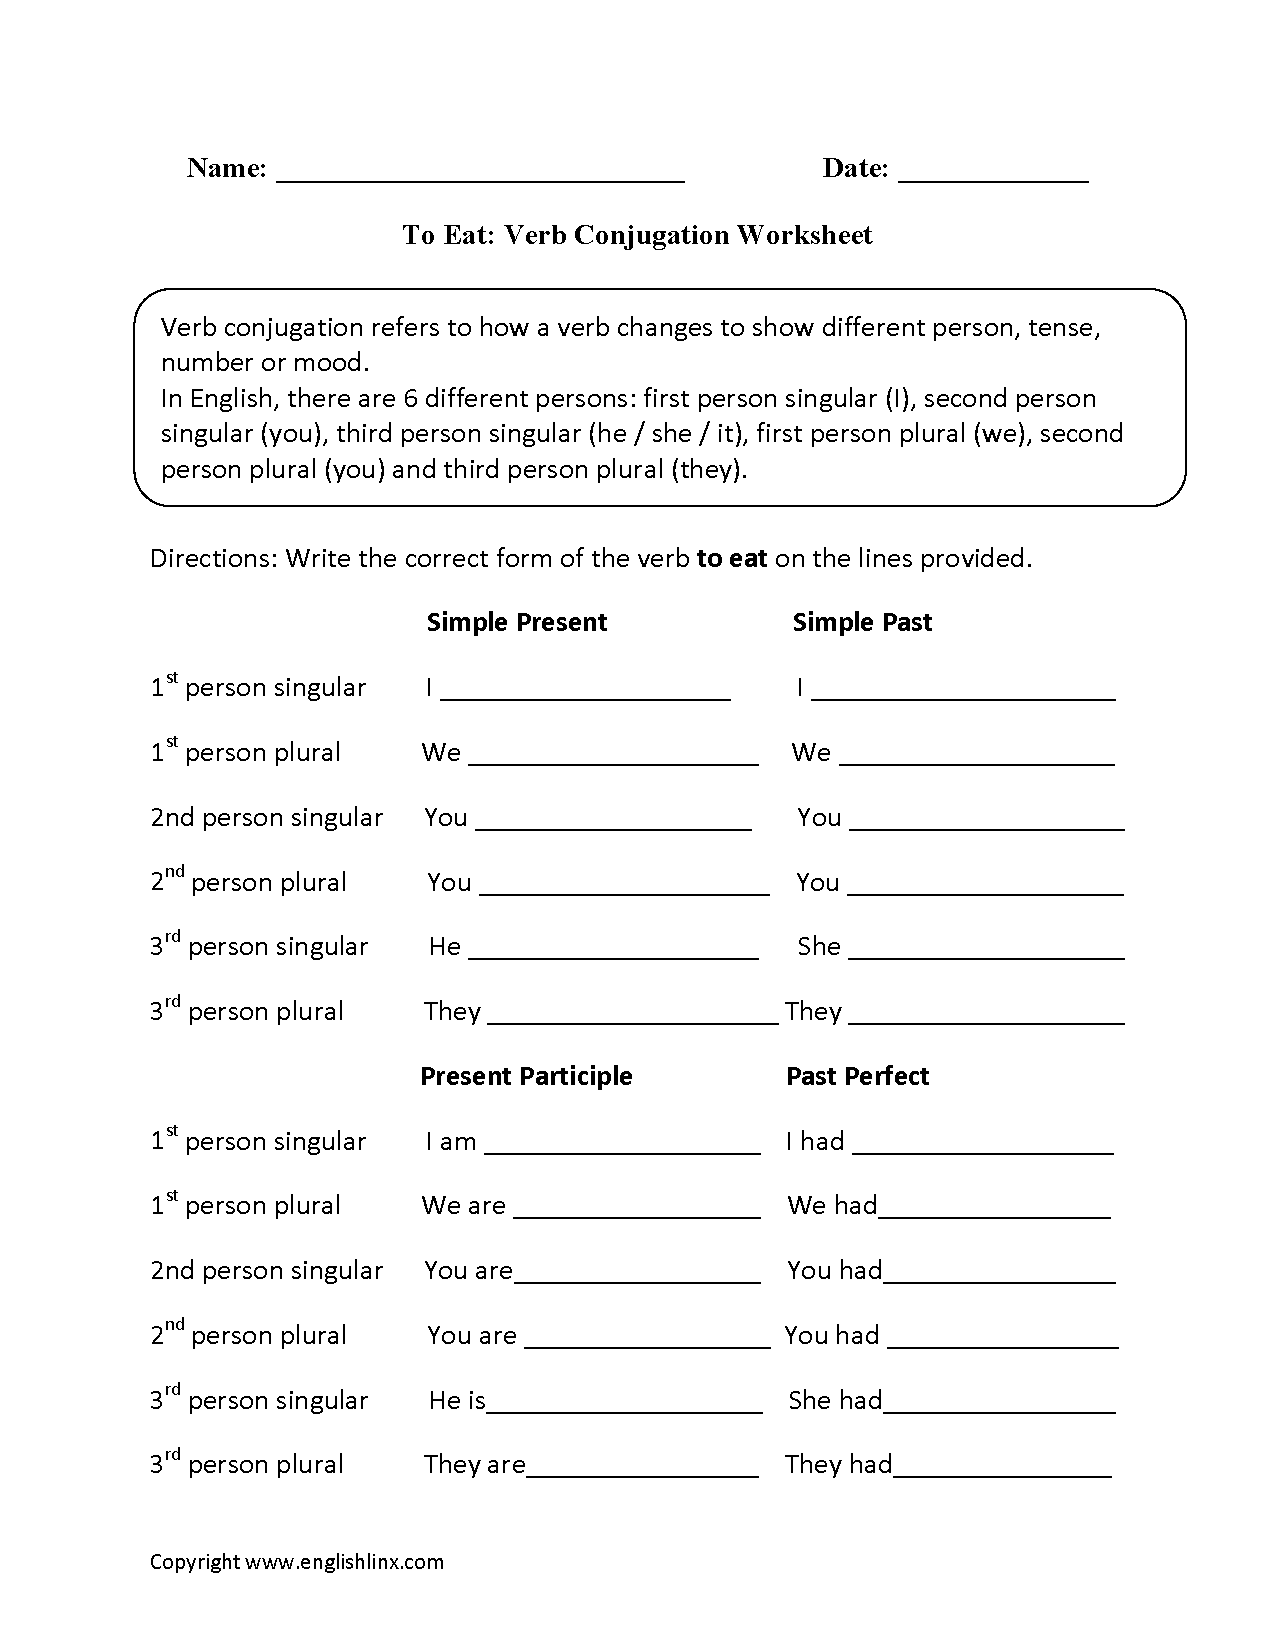 To Eat Verb Conjugation Worksheets